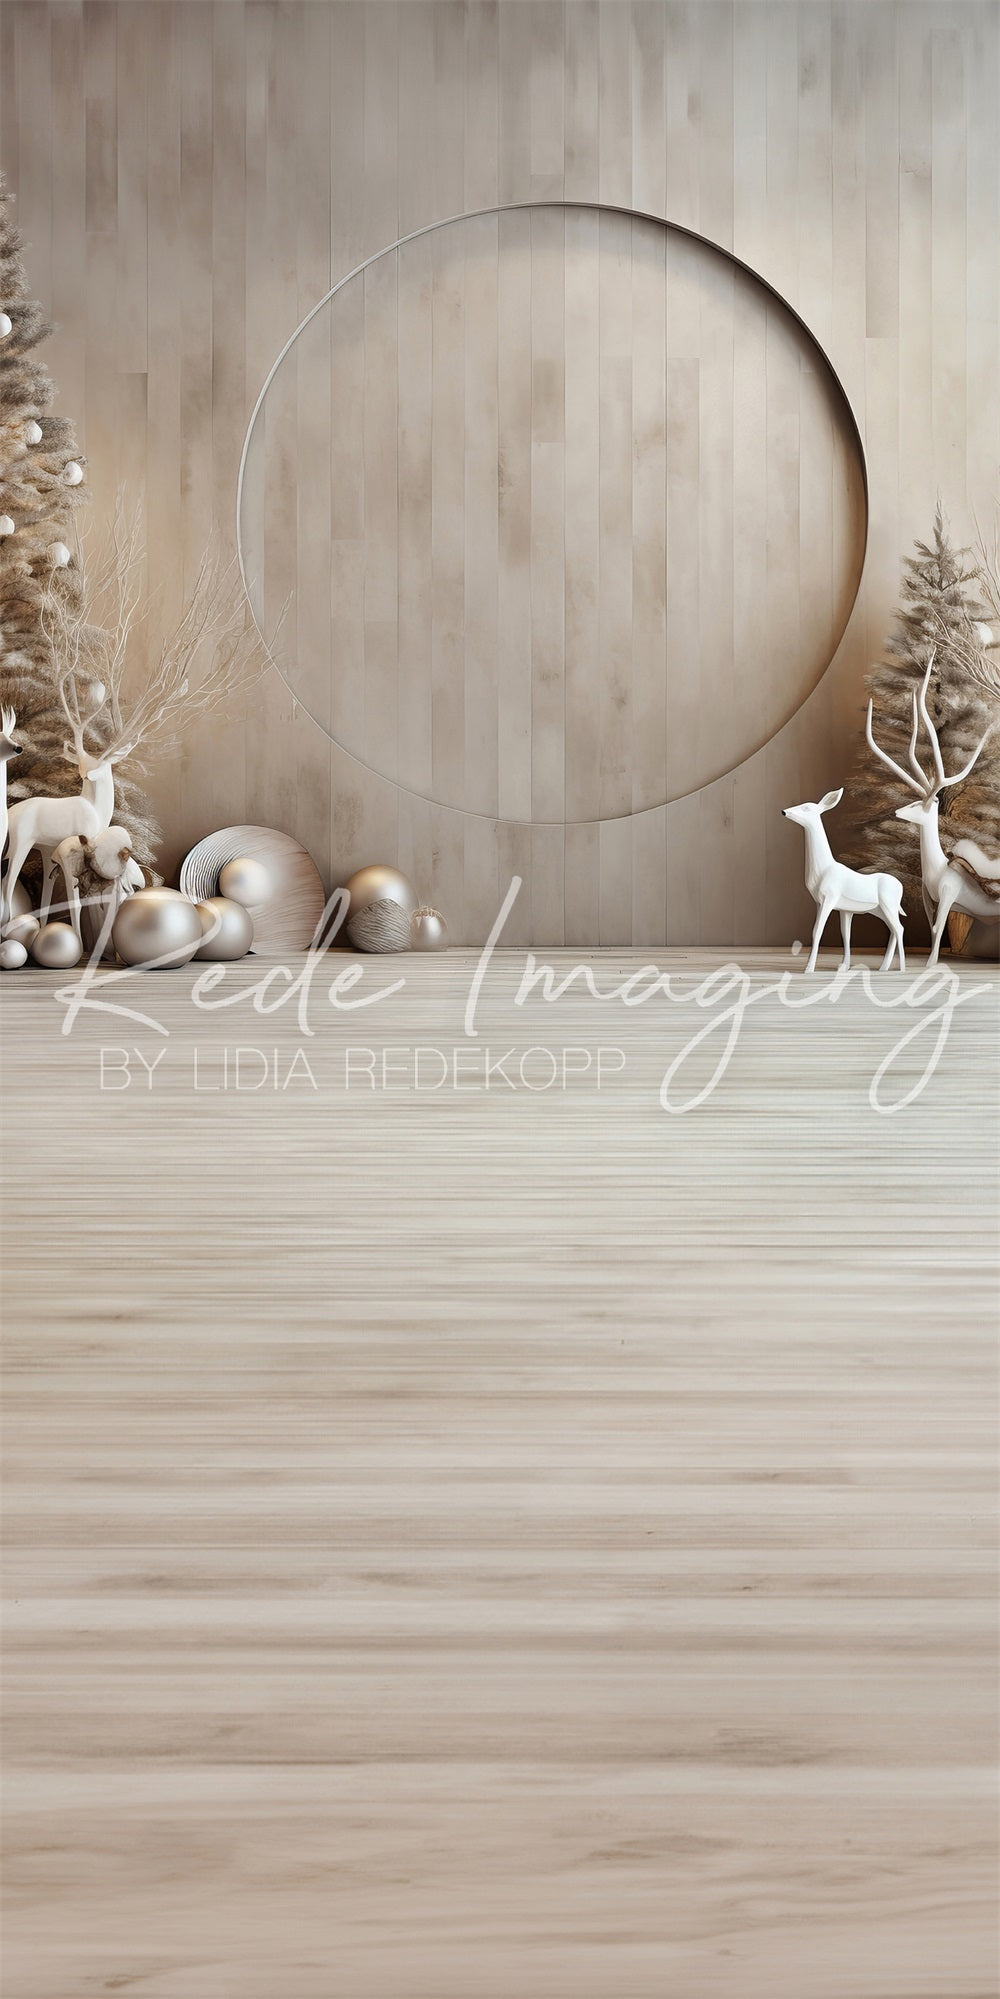 Sweep Doe a Deer Christmas Backdrop Progettato da Lidia Redekopp